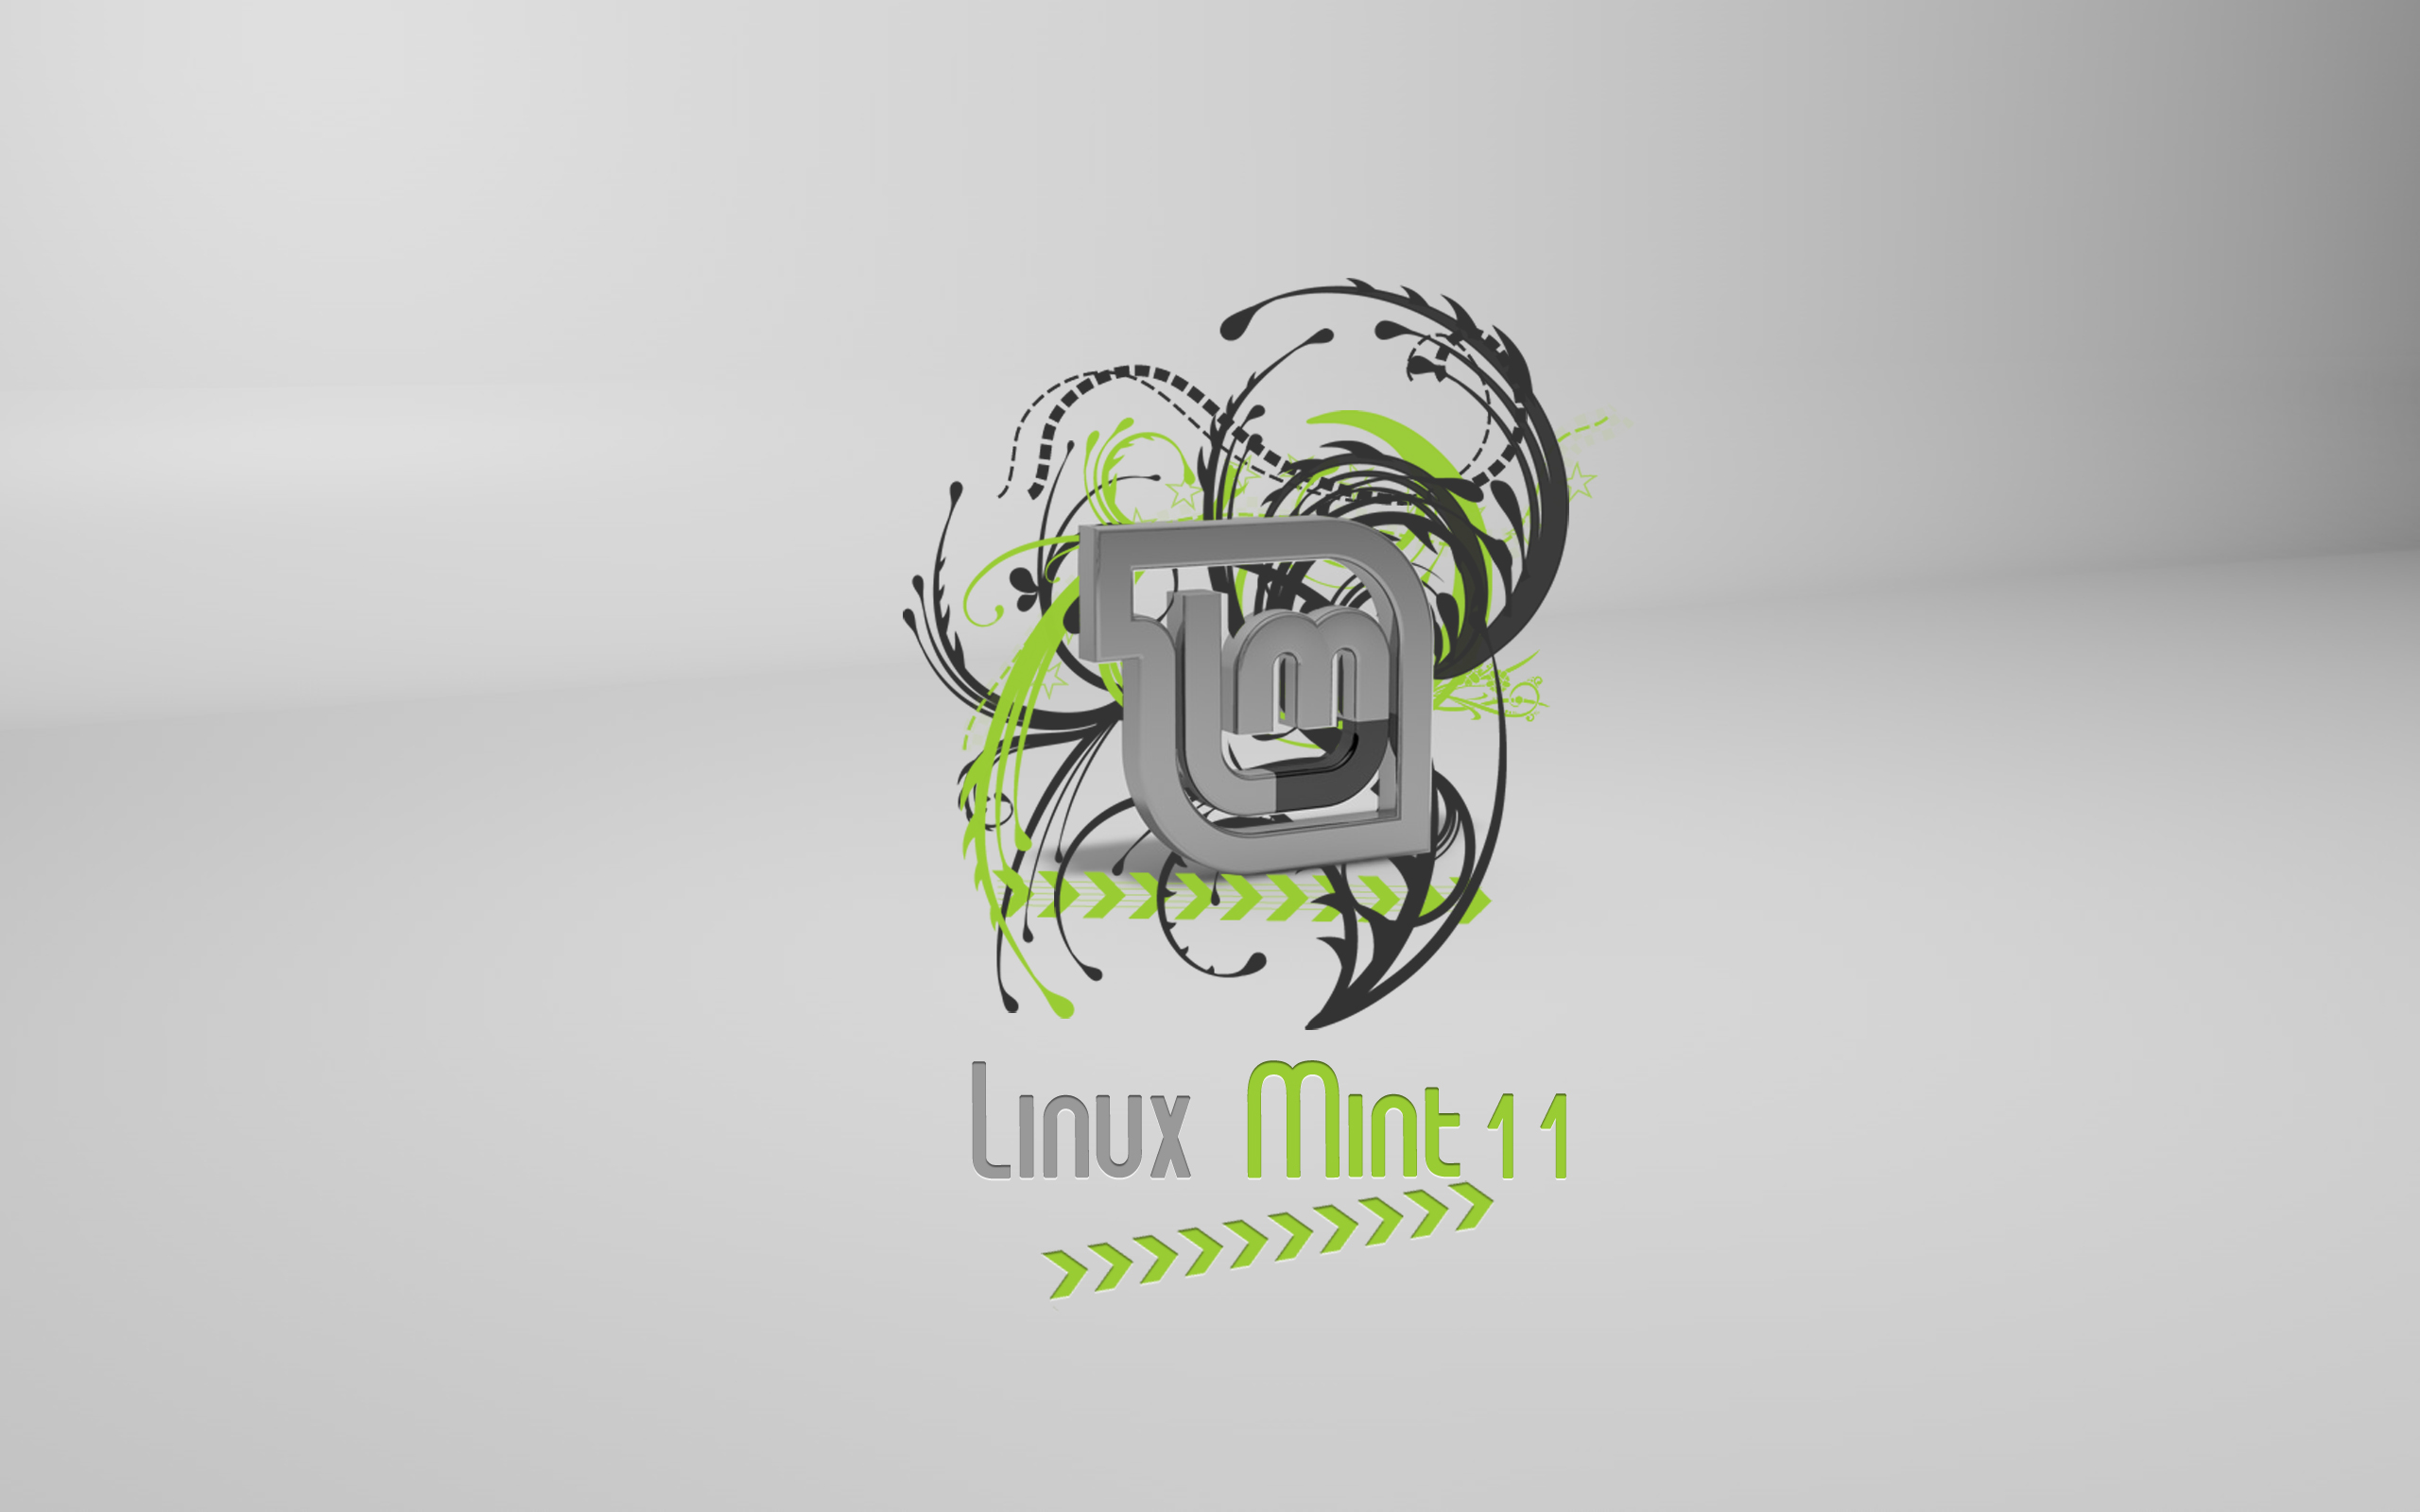 Linuxmint Hd Wallpapers Pixelstalk Net